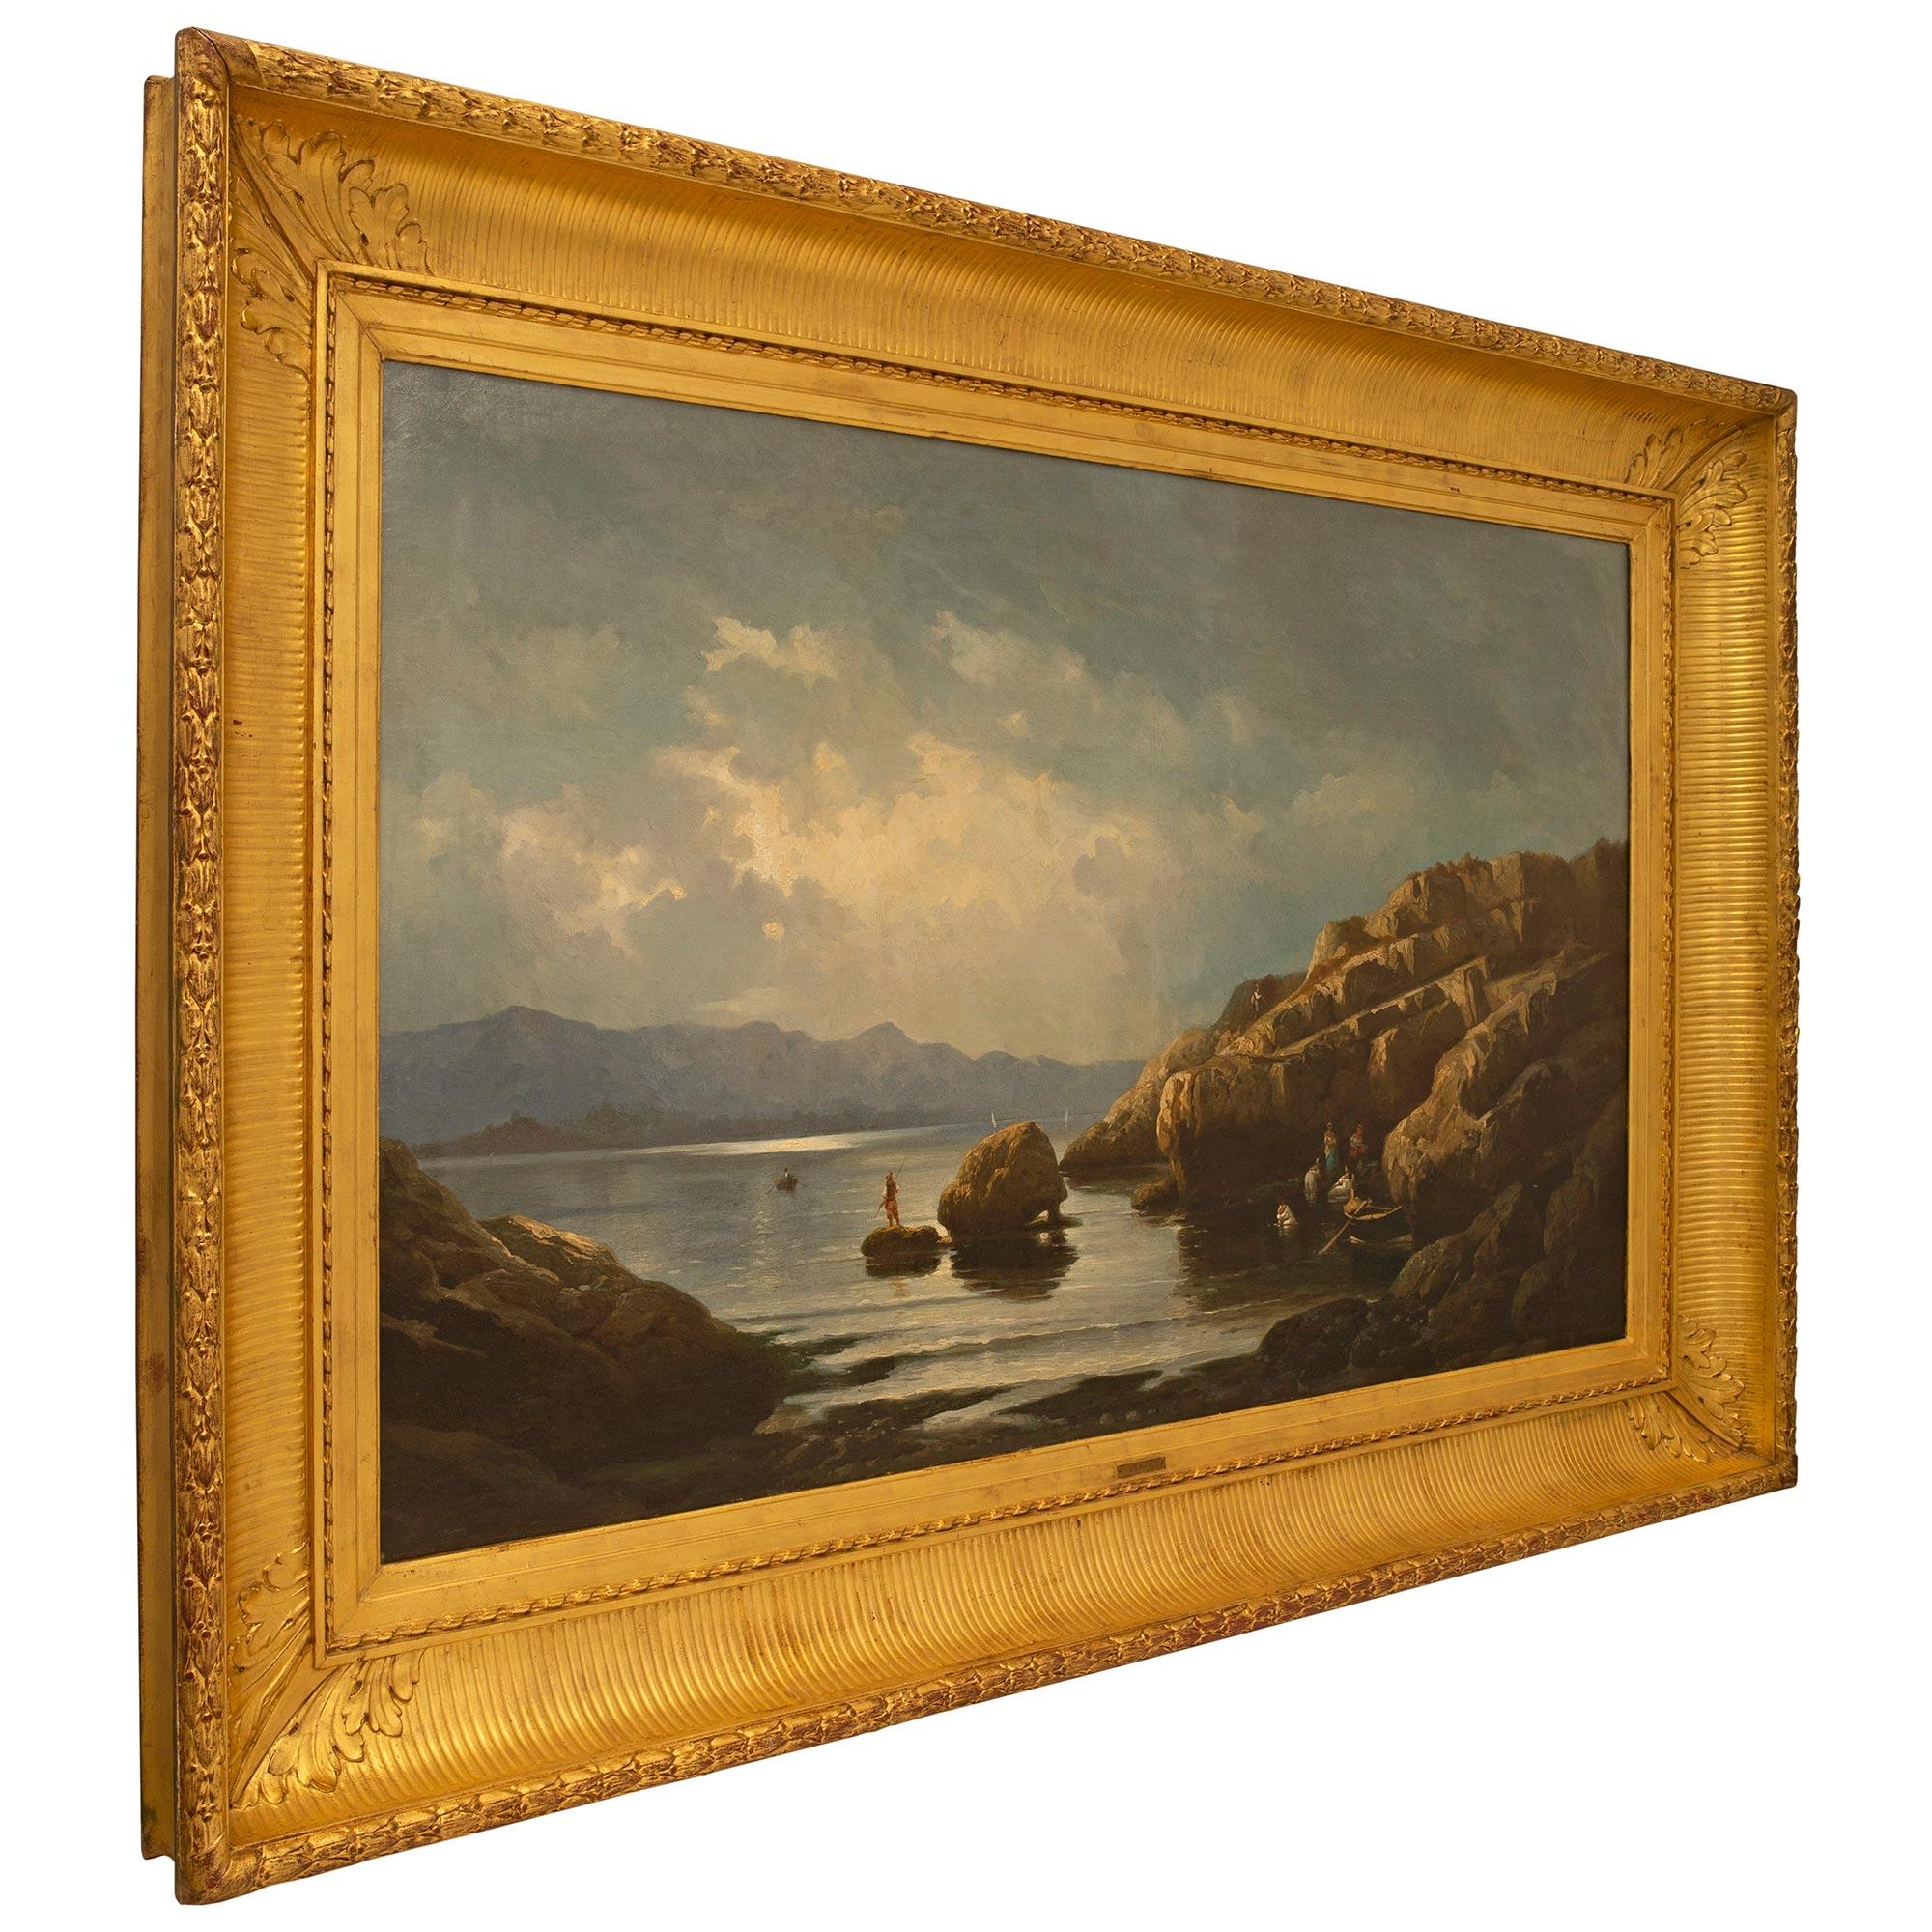 Eine sensationelle und großformatige Französisch Mitte des 19. Jahrhunderts Öl auf Leinwand Gemälde von Marie-Auguste Martin um 1860. Das schöne Landschaftsgemälde befindet sich in seinem originalen Goldholzrahmen mit einem reich geschnitzten